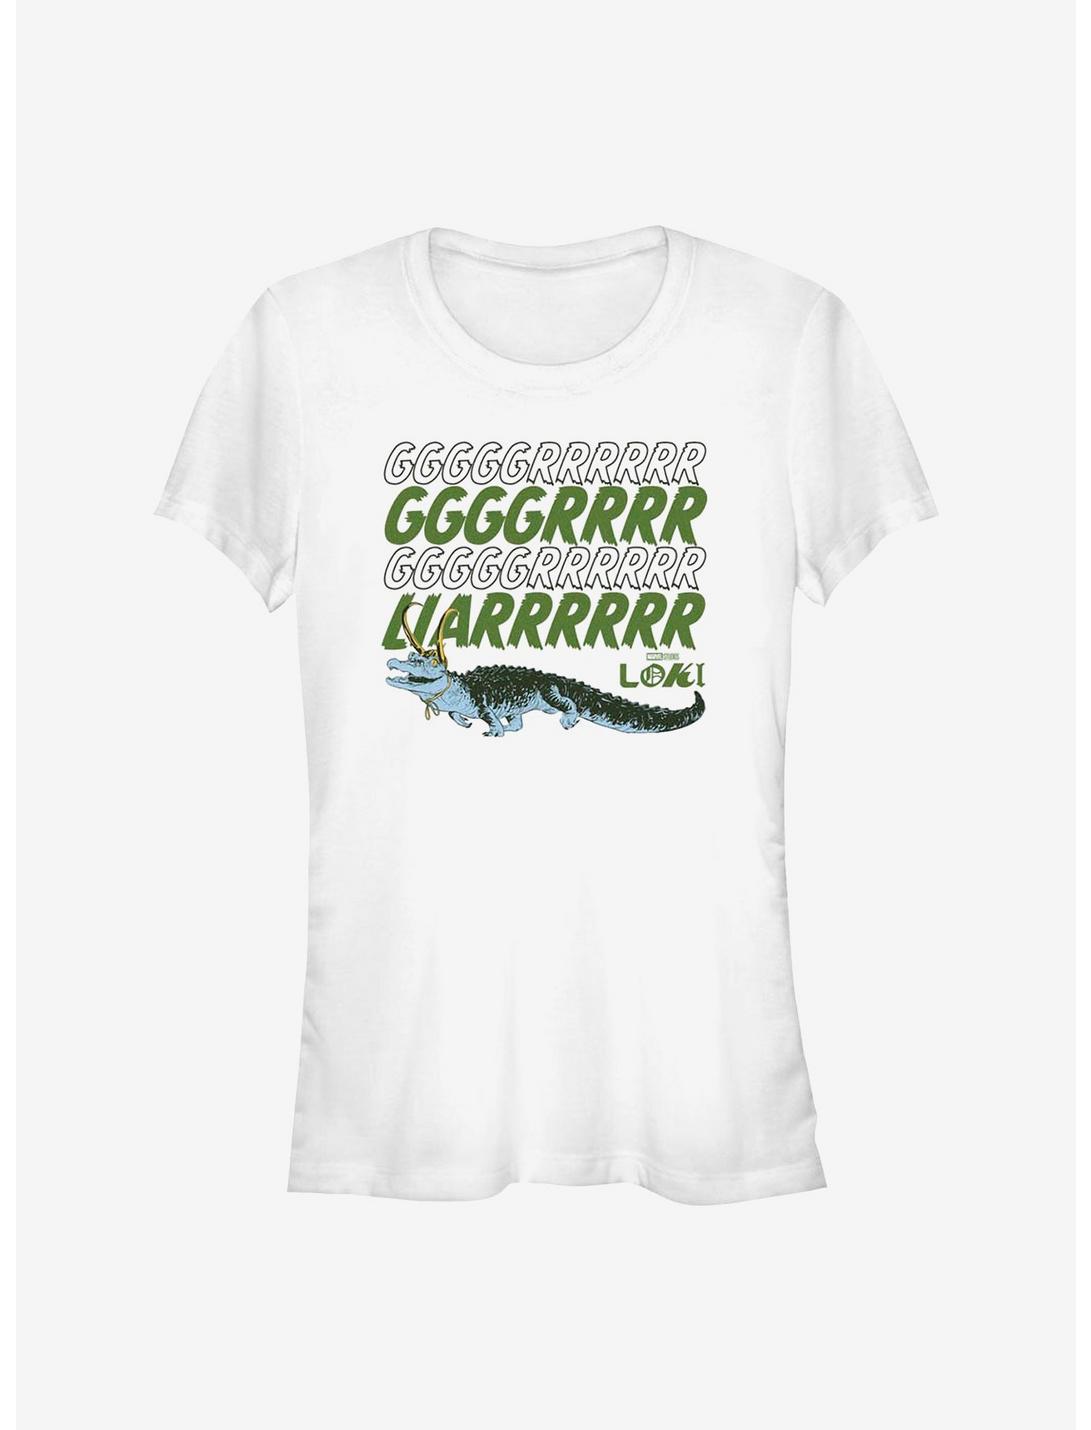 Marvel Loki Grrr Liar Alligator Girls T-Shirt, WHITE, hi-res